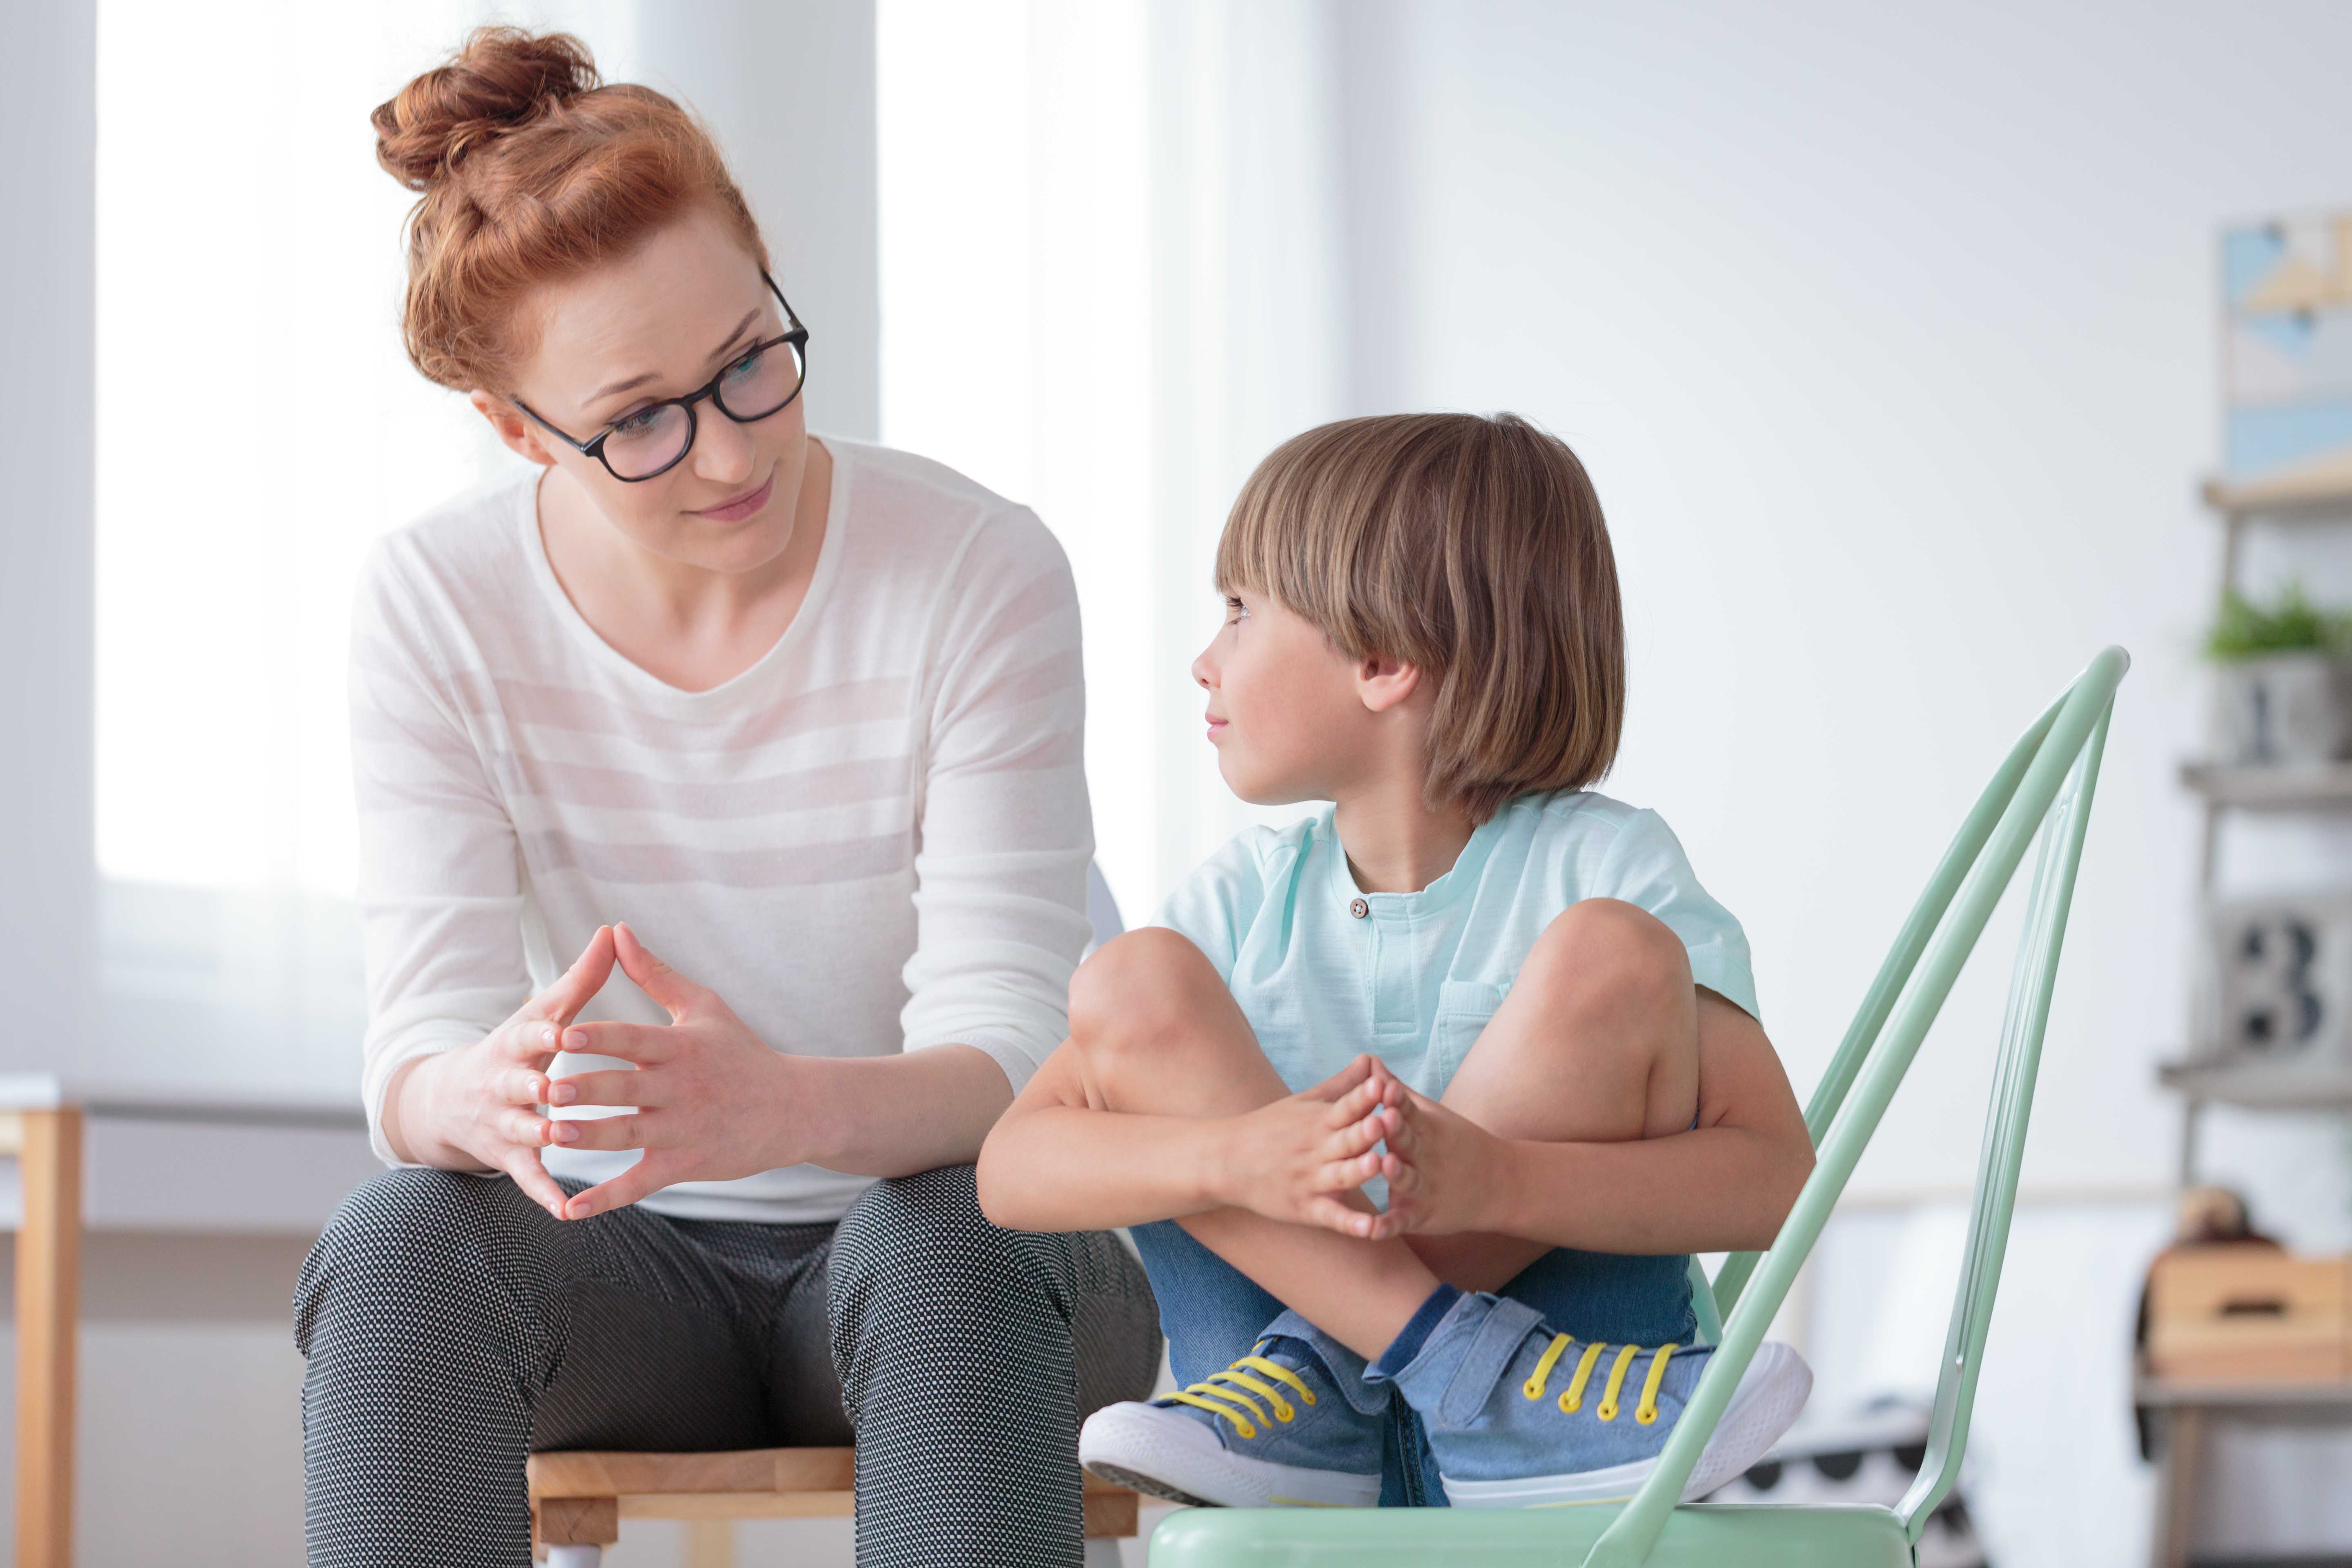 10 советов психолога, как не срываться на своего ребенка